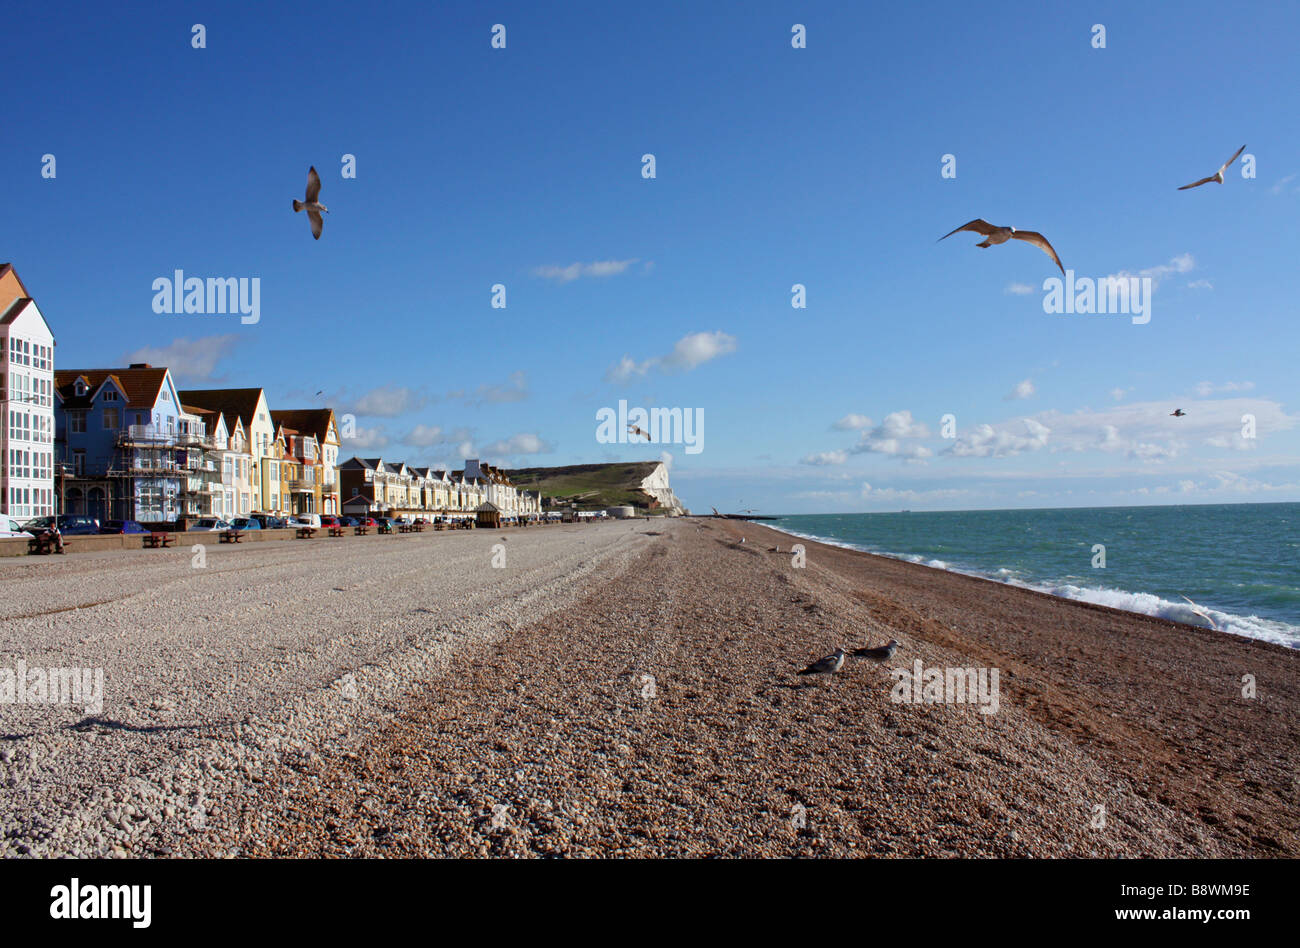 La plage de Seaford, East Sussex, England, UK Banque D'Images